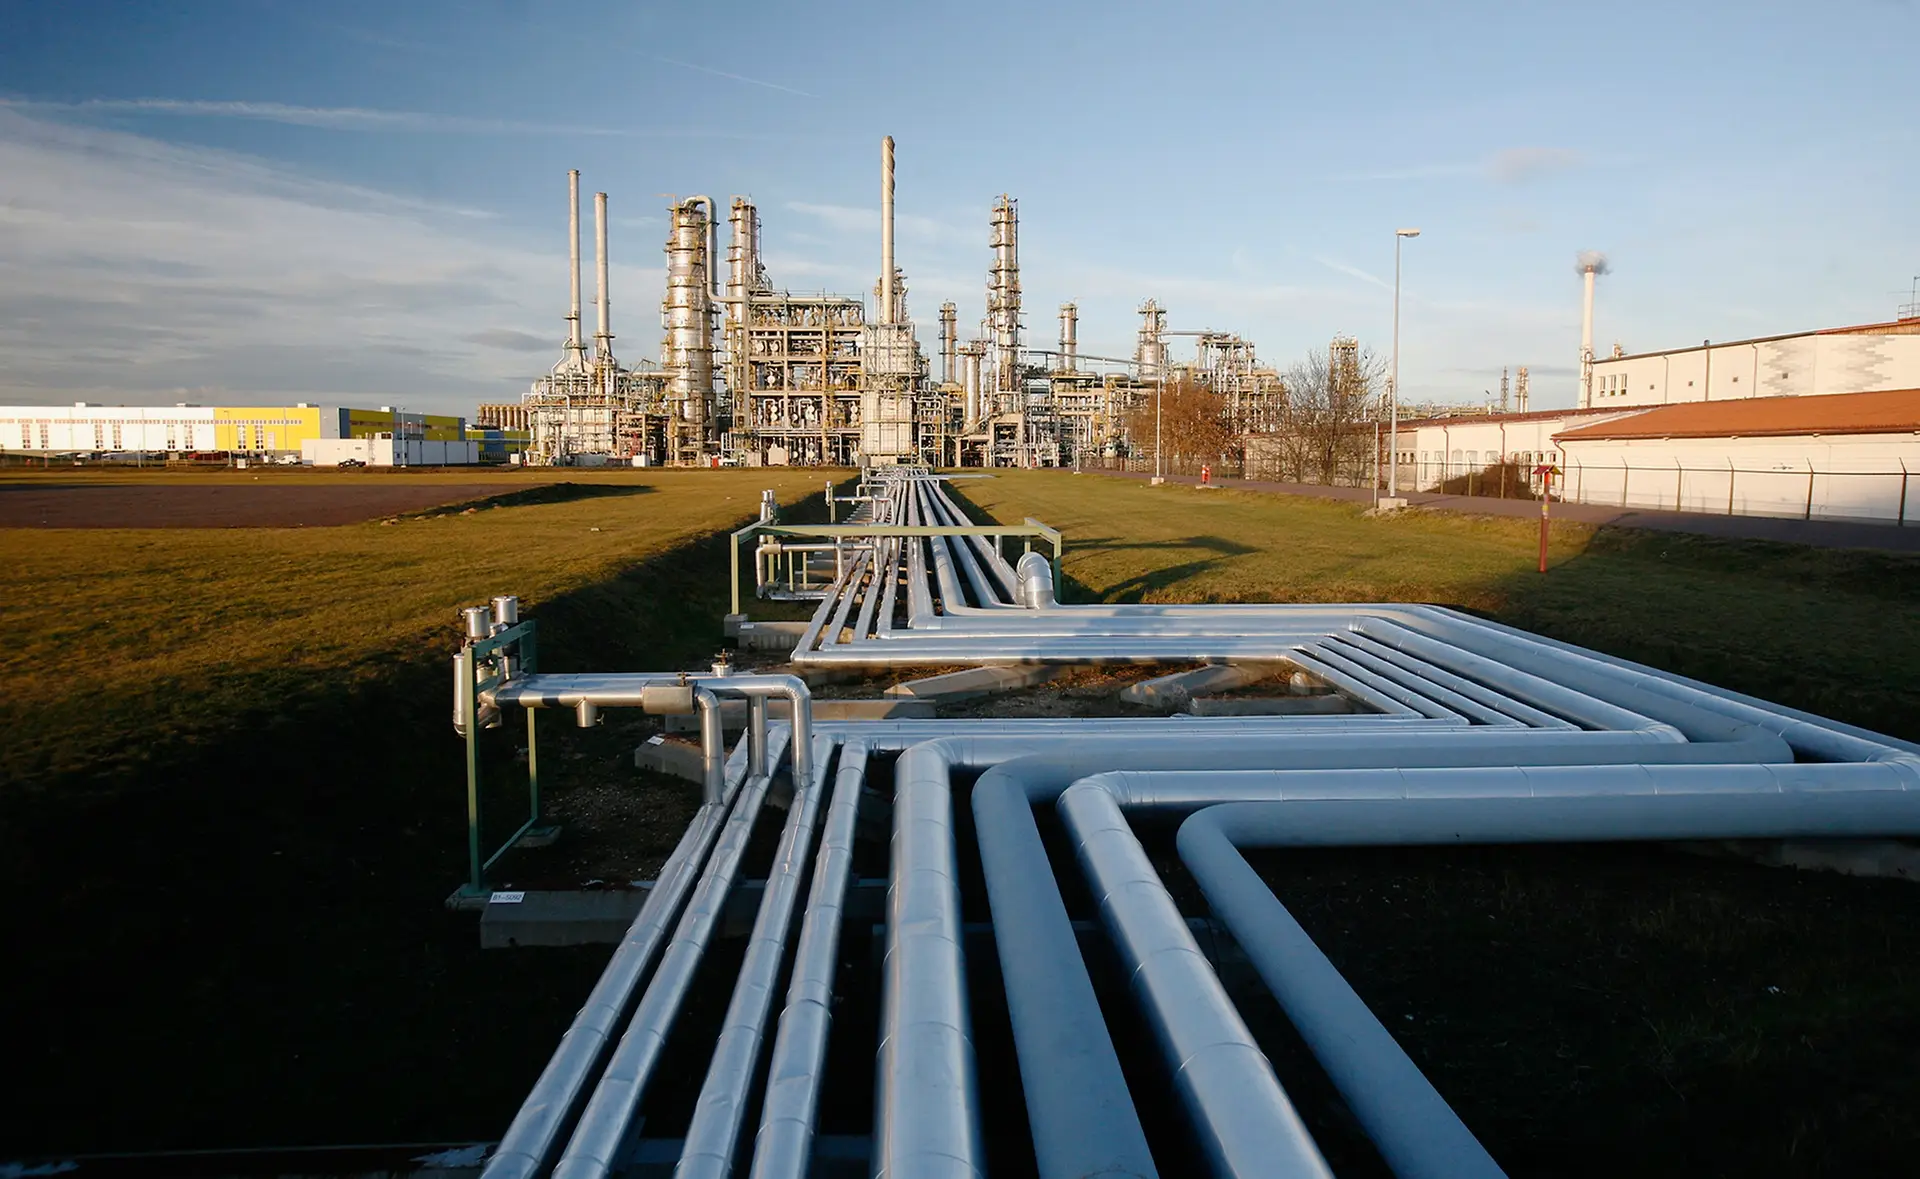 Crise do gás na Alemanha "ainda não terminou" e mais escassez pode estar à porta, alerta regulador